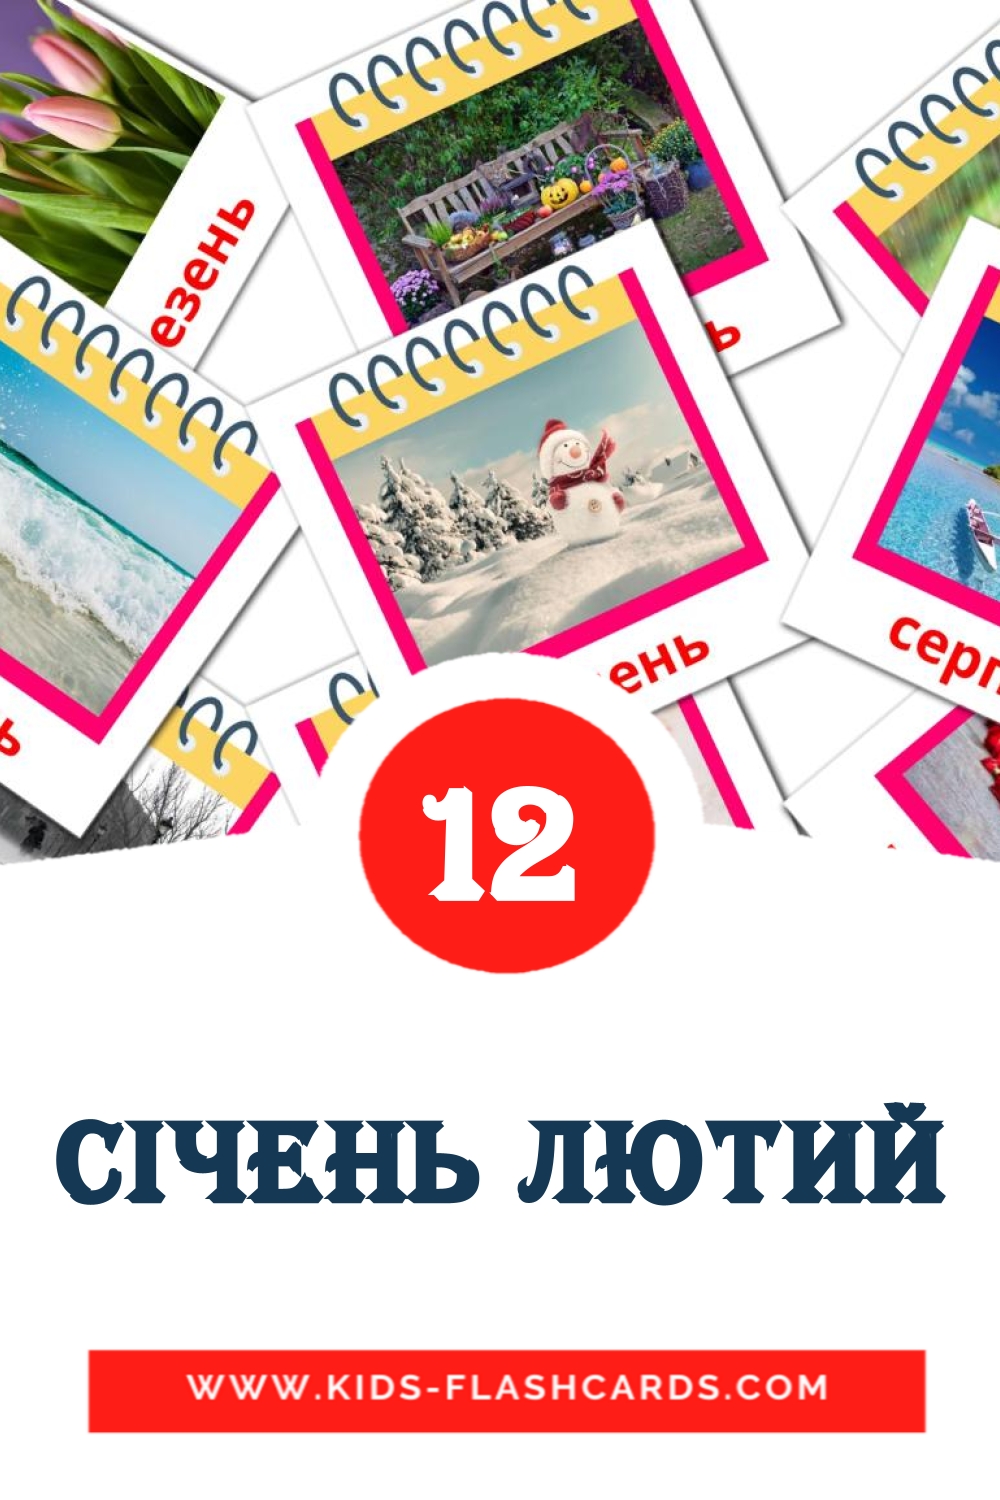 12 tarjetas didacticas de Січень лютий para el jardín de infancia en ucraniano